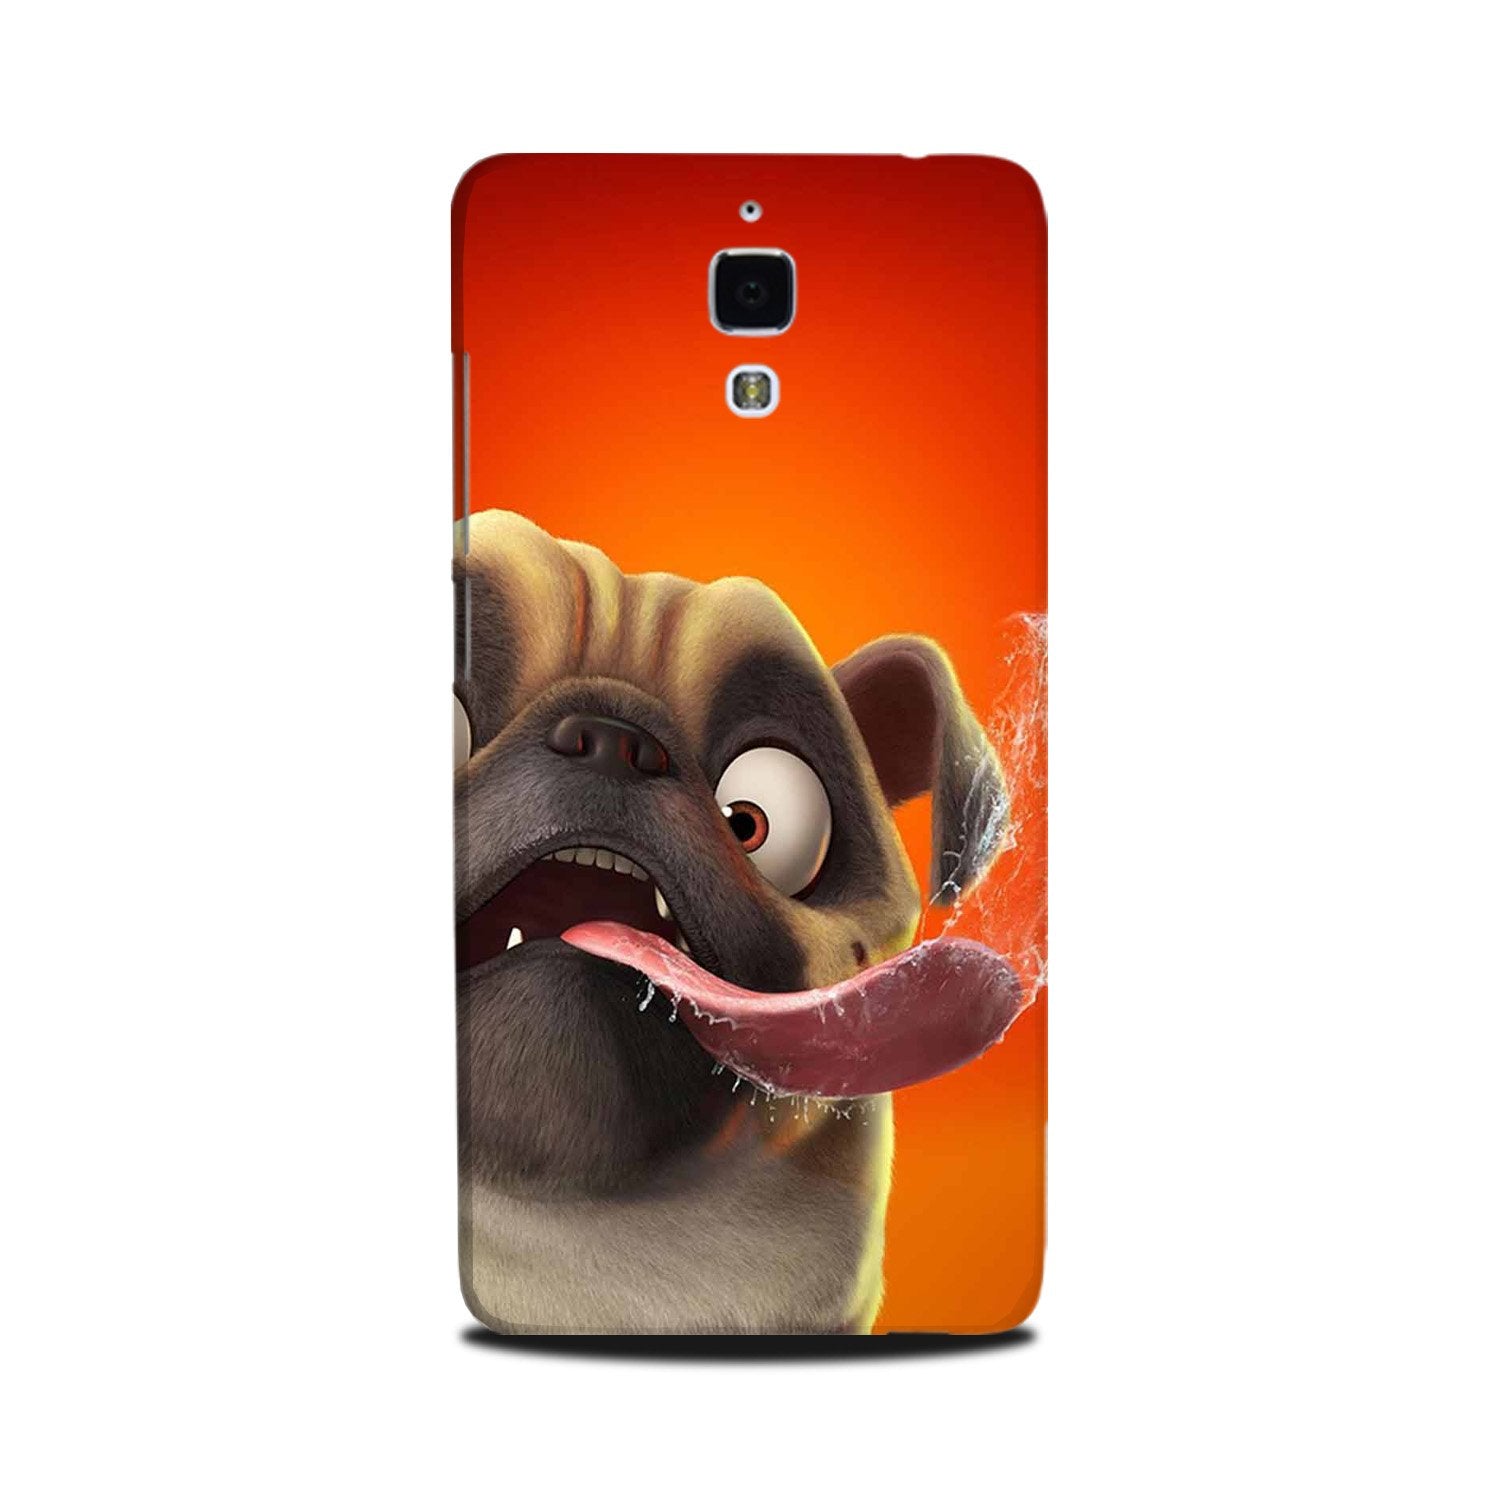 Dog Mobile Back Case for Mi 4(Design - 343)